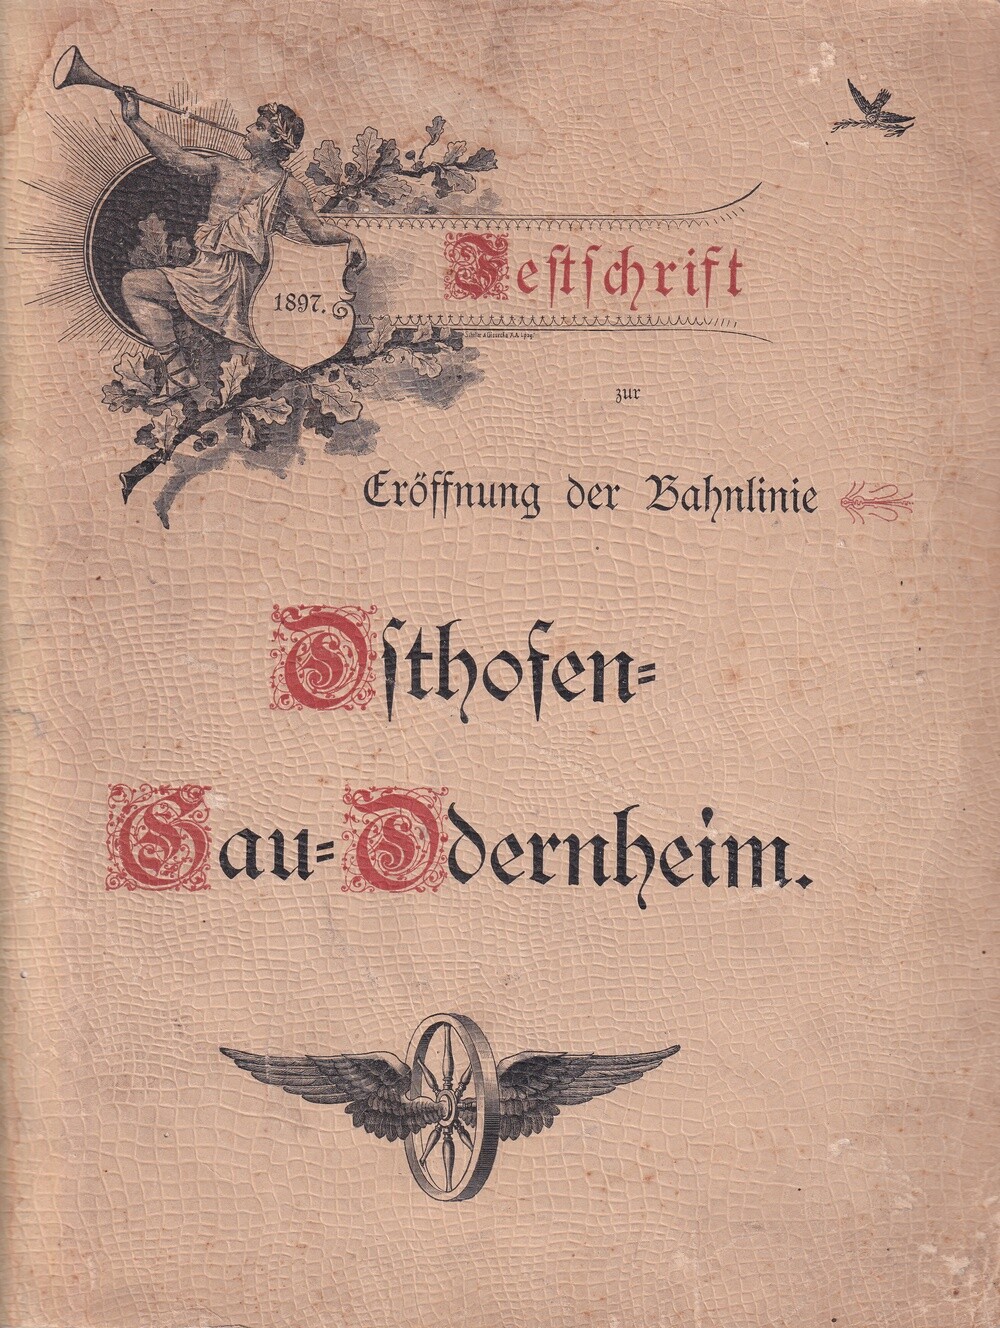 Festschrift zur Eröffnung der Bahnlinie Osthofen - Gau-Oderheim 1897 (Kulturverein Guntersblum CC BY-NC-SA)